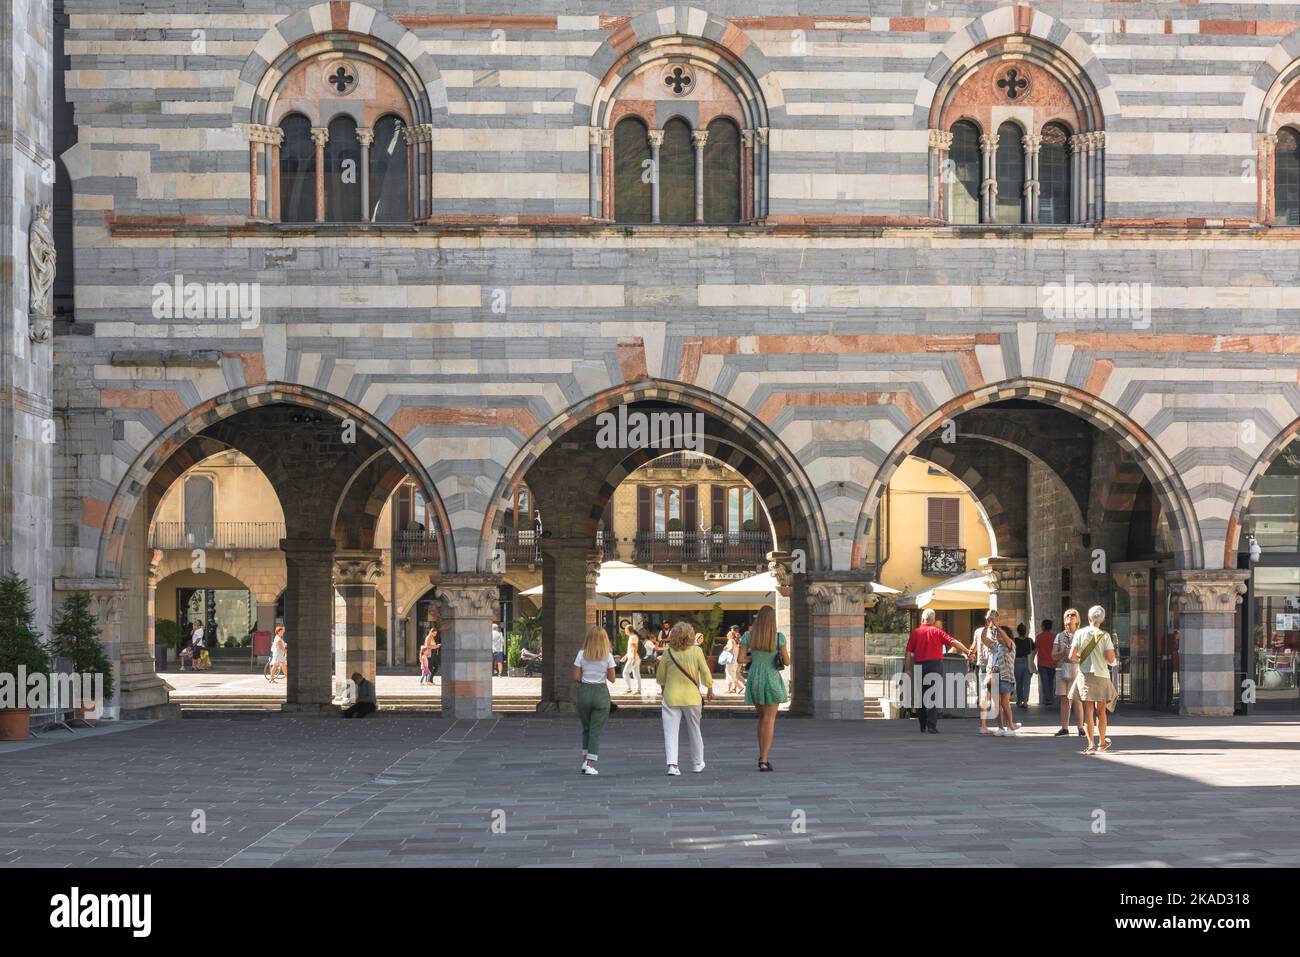 Città rinascimentale d'Italia, vista degli archi del Broletto, ex tribunale rinascimentale nel centro storico della città di Como Foto Stock